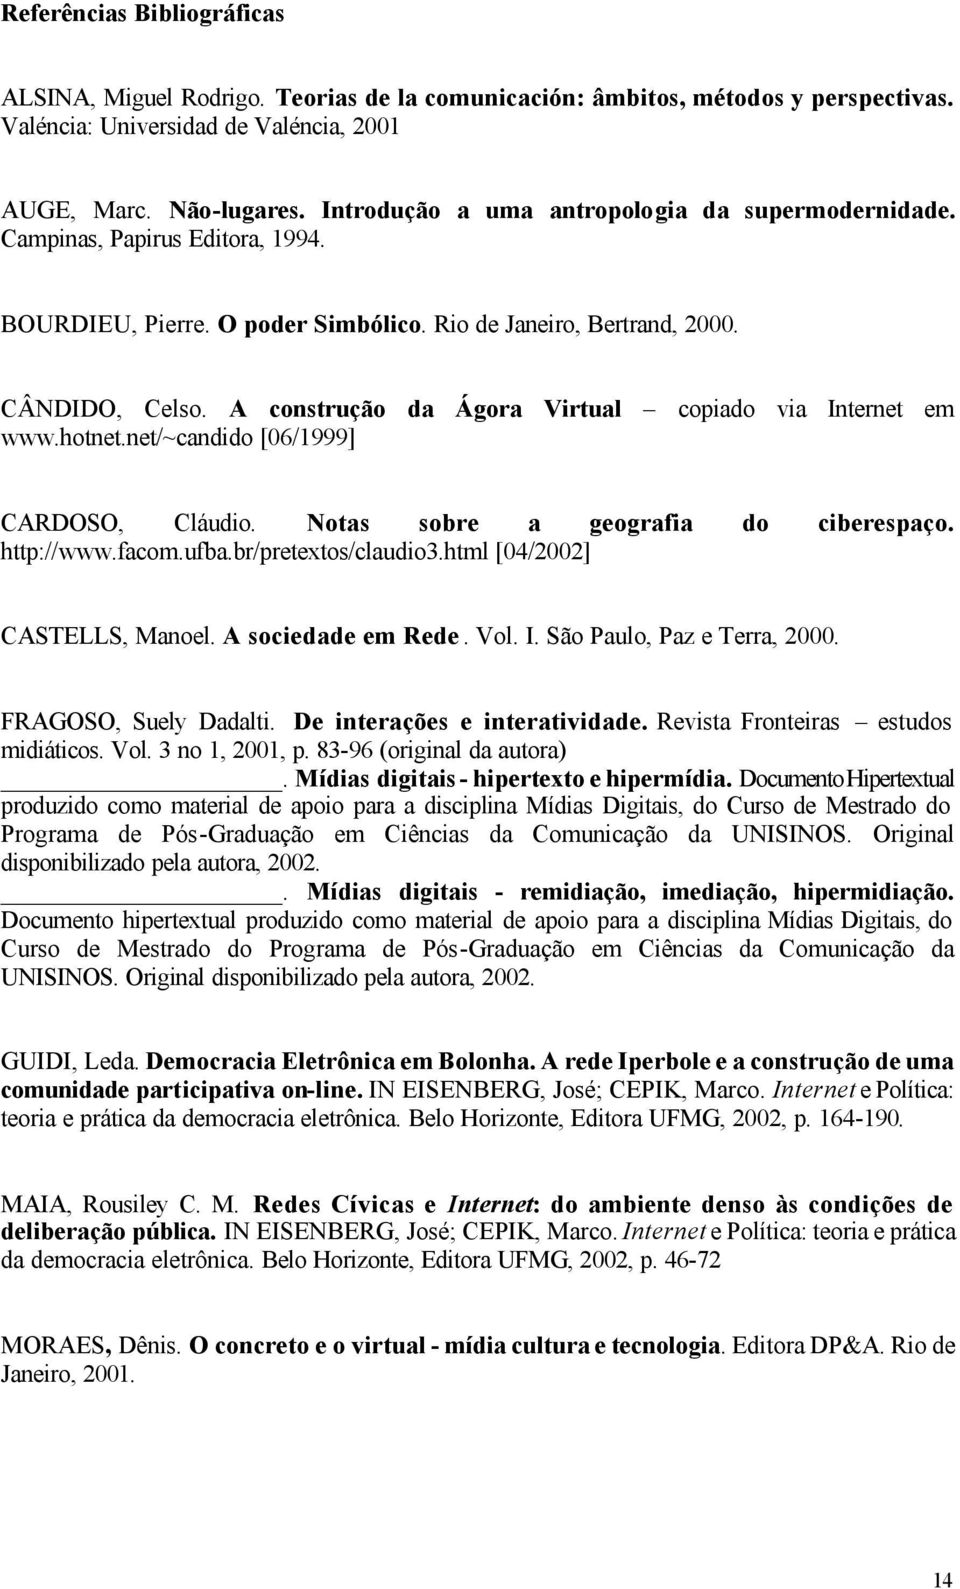 A construção da Ágora Virtual copiado via Internet em www.hotnet.net/~candido [06/1999] CARDOSO, Cláudio. Notas sobre a geografia do ciberespaço. http://www.facom.ufba.br/pretextos/claudio3.